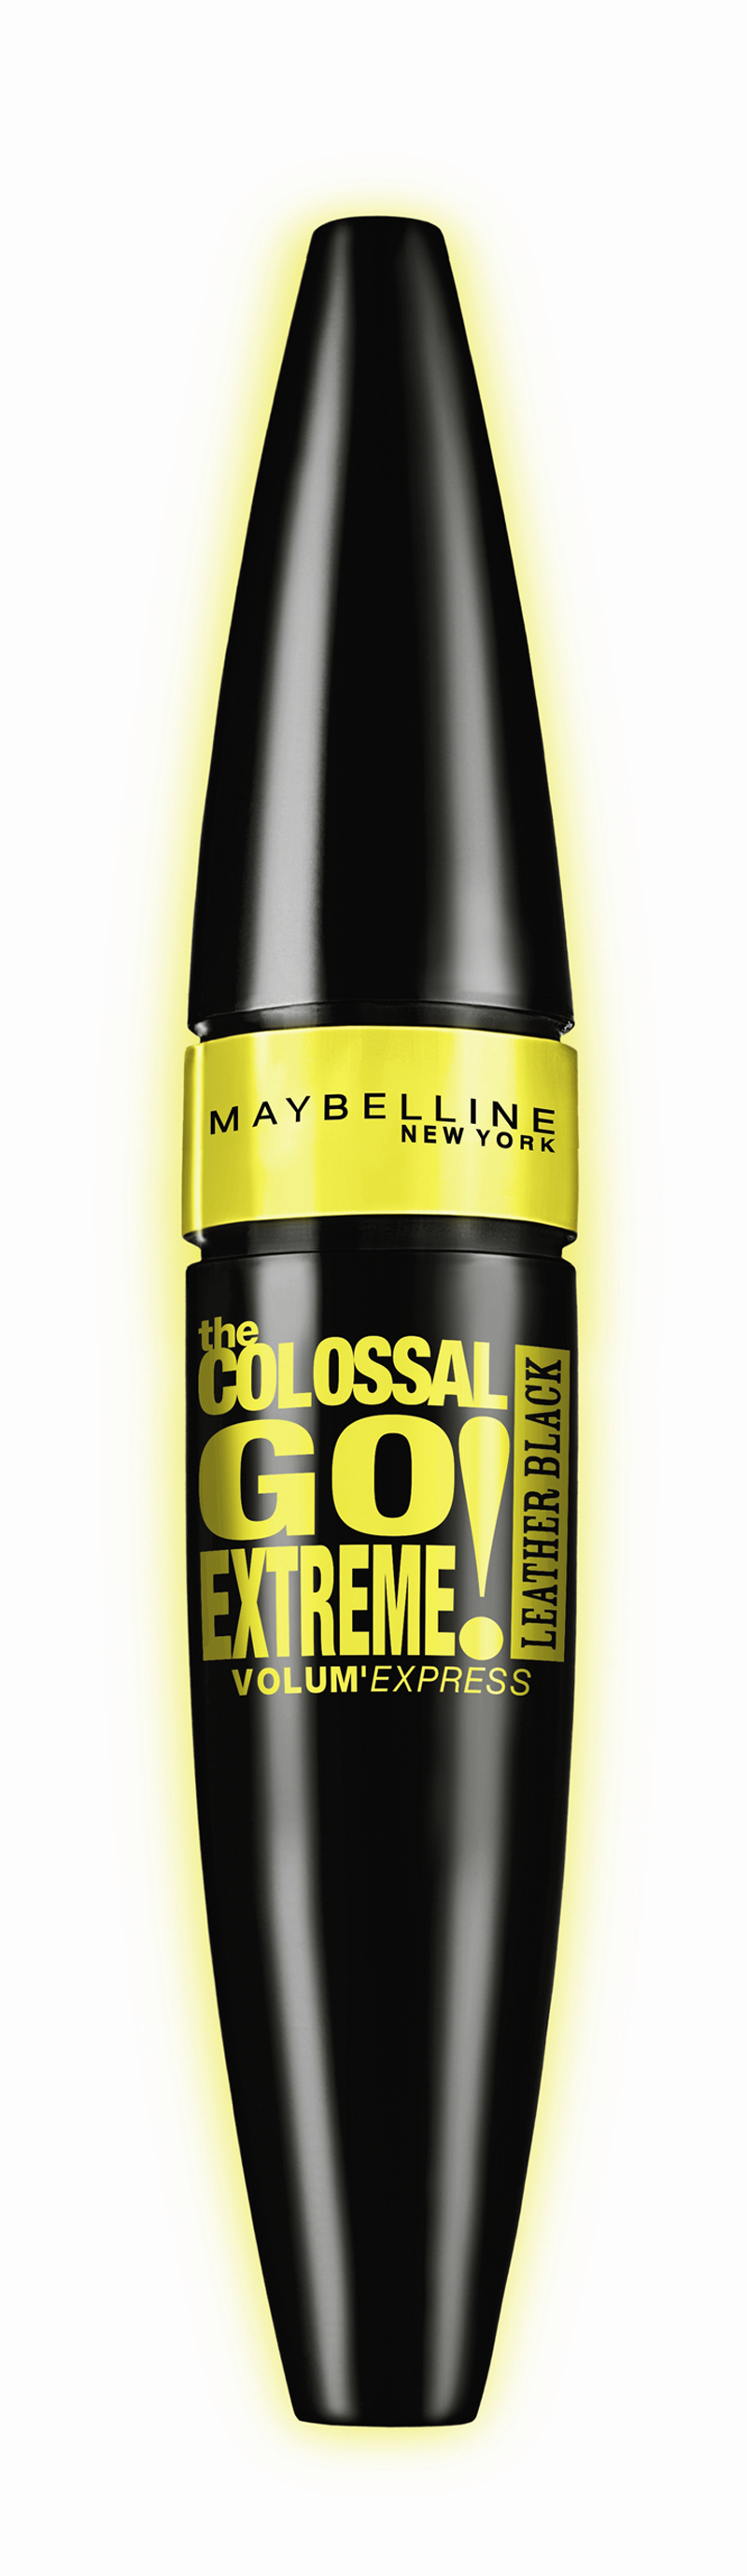 Trivia: Maybelline regala 4 kits de la nueva máscara Colossal Intense Black